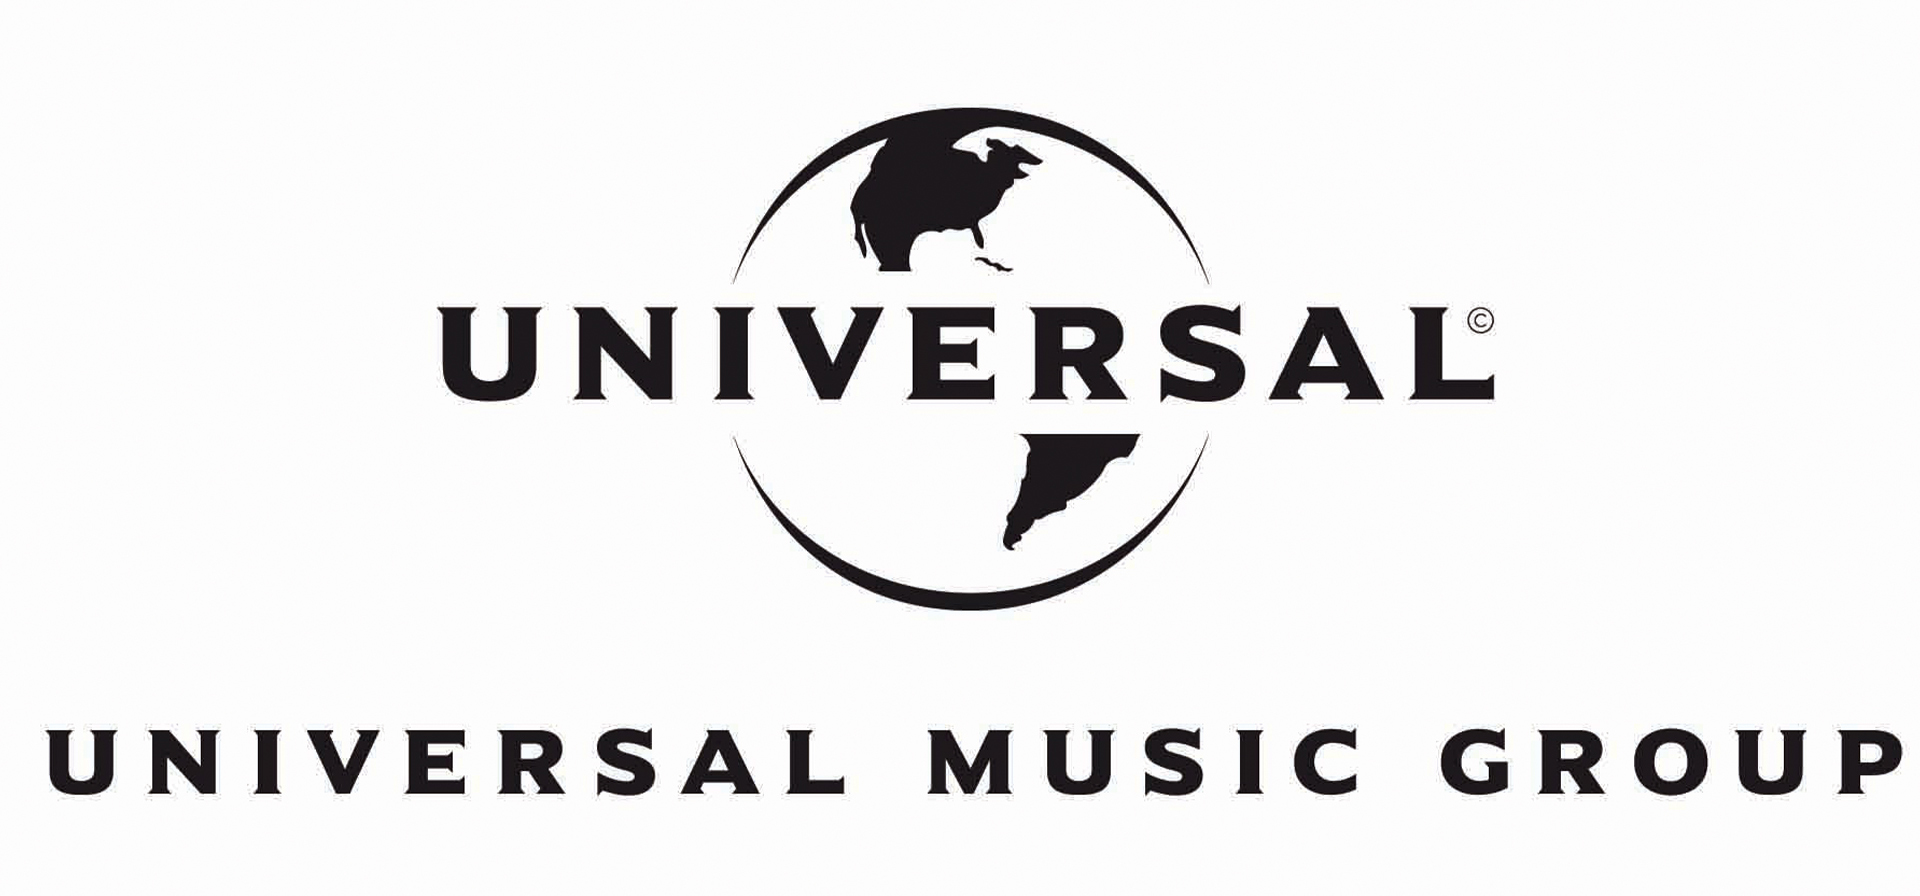 Universal music